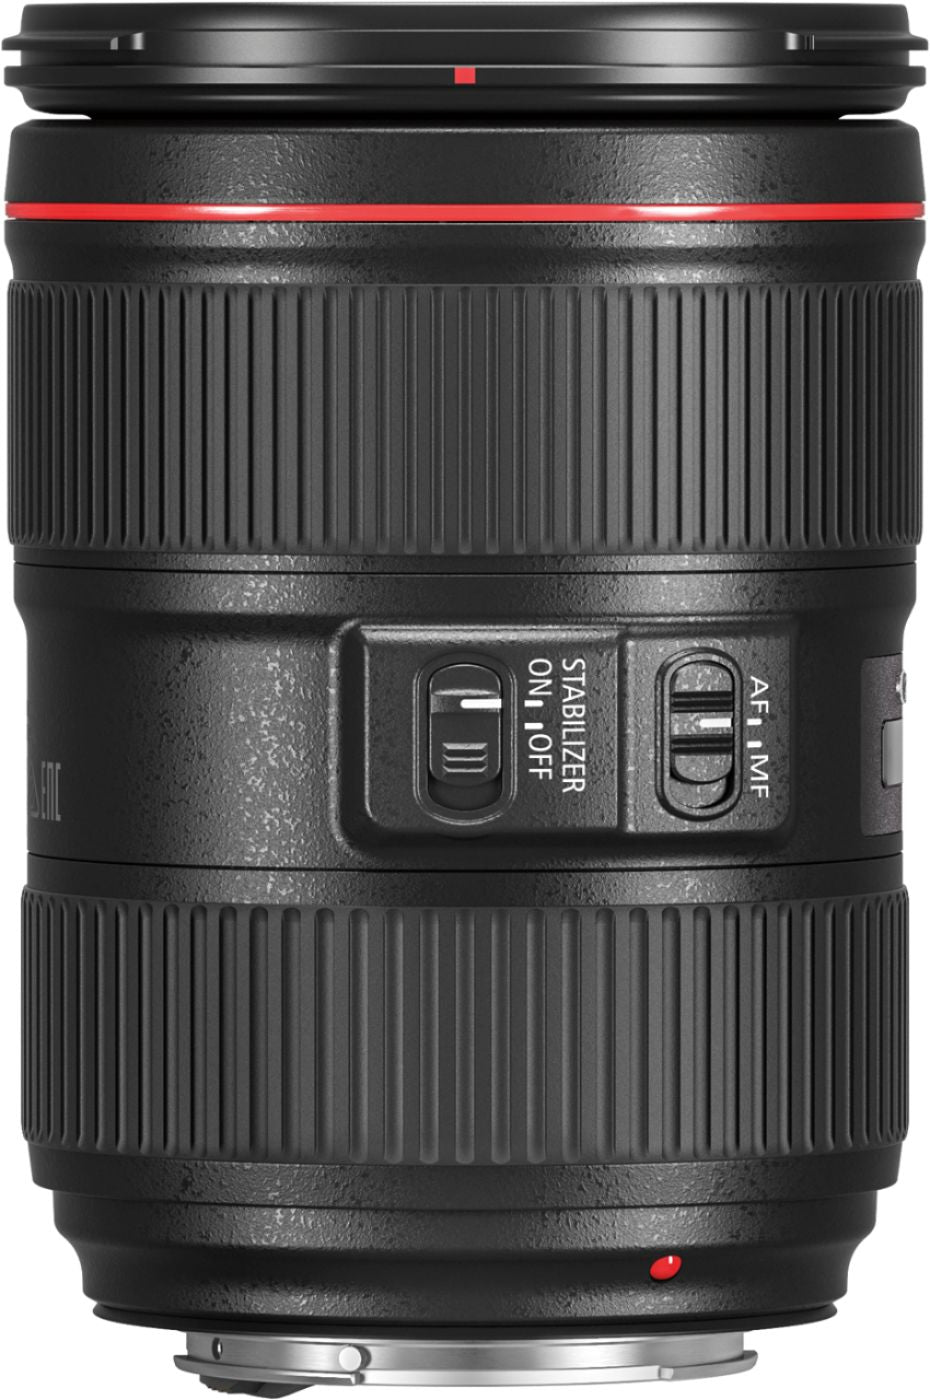 Canon - EF 24-105mm f/4L IS II USM Zoom Lens for EF-mount cameras_2